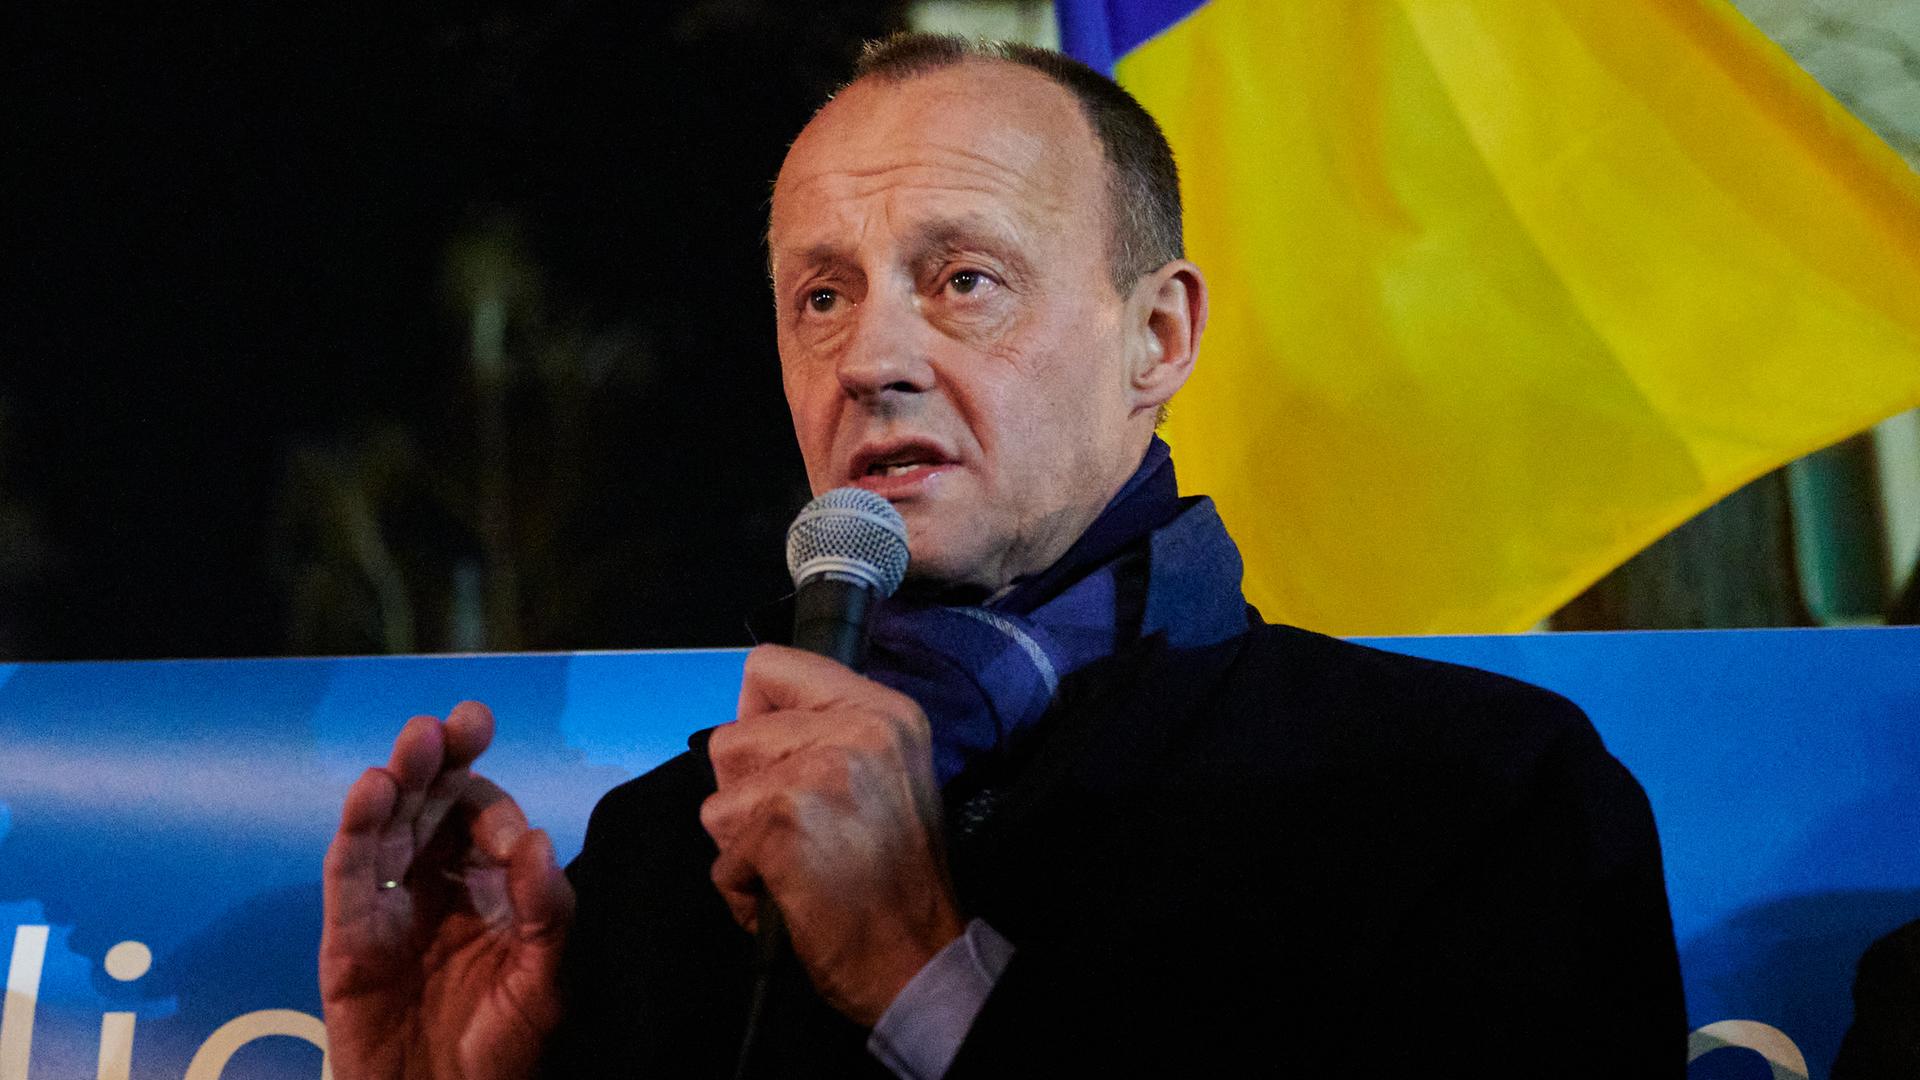 Friedrich Merz steht am späten Abend auf der Straße und spricht engagiert in ein Mikrofon, hinter ihm weht die gelb-blaue Flagge der Ukraine.